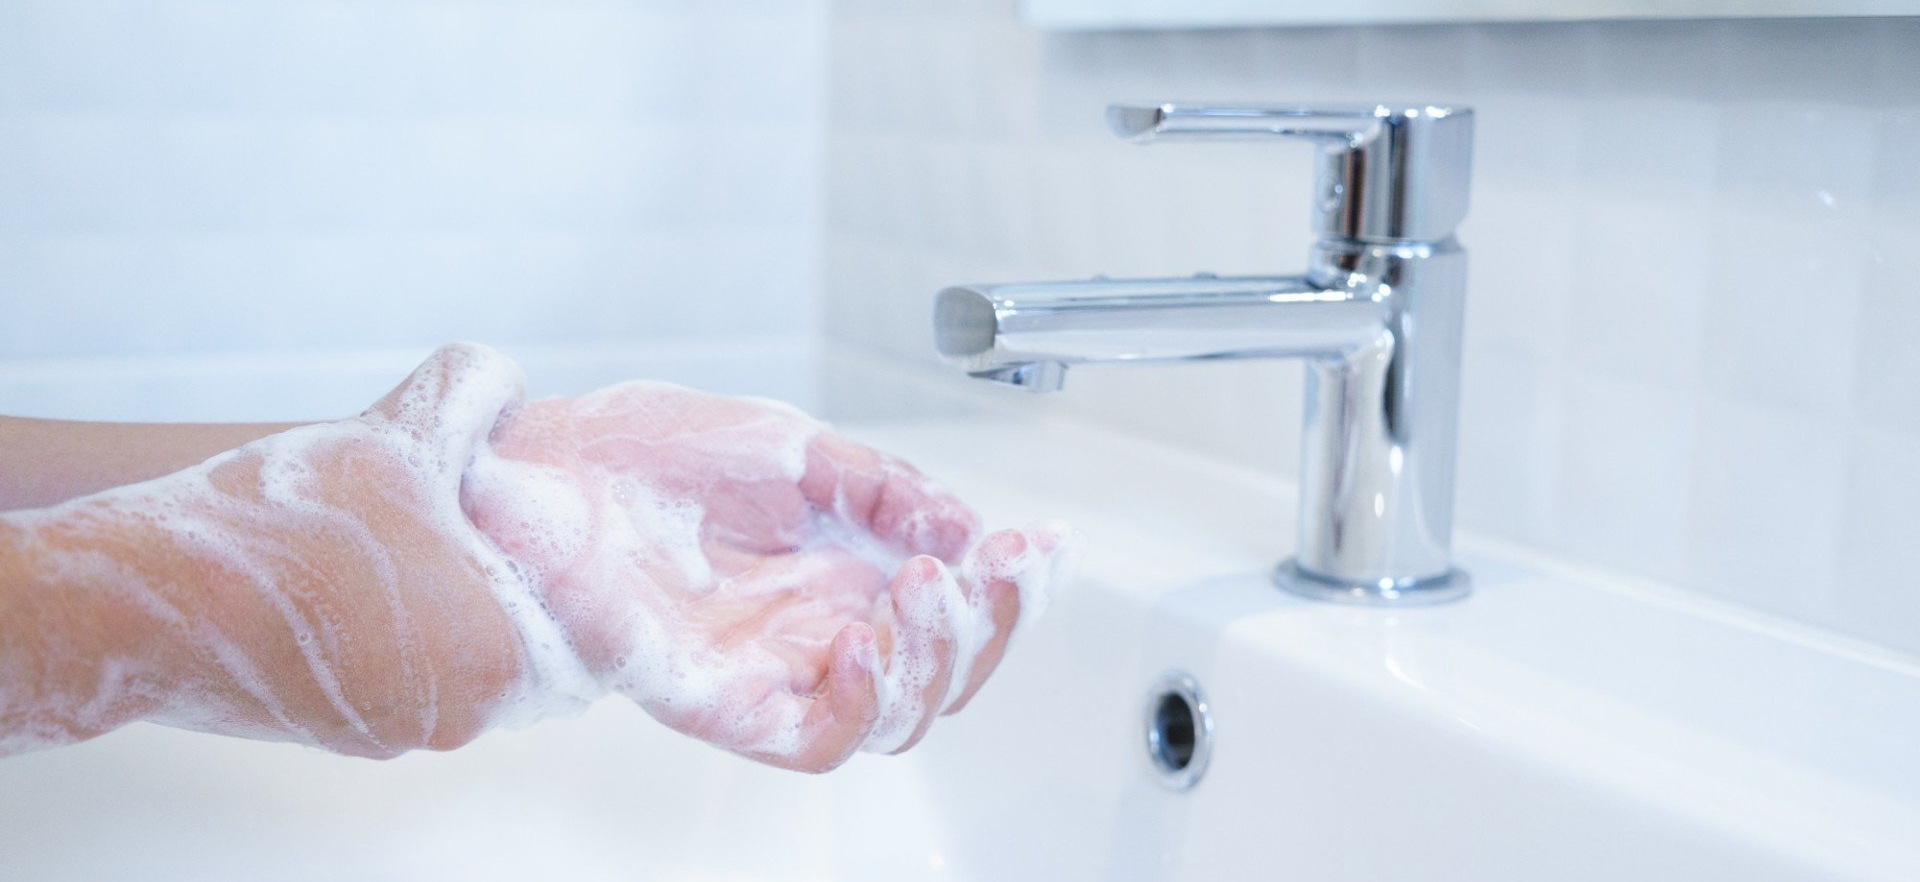 CORONAVIRUS- Lavons-nous les mains